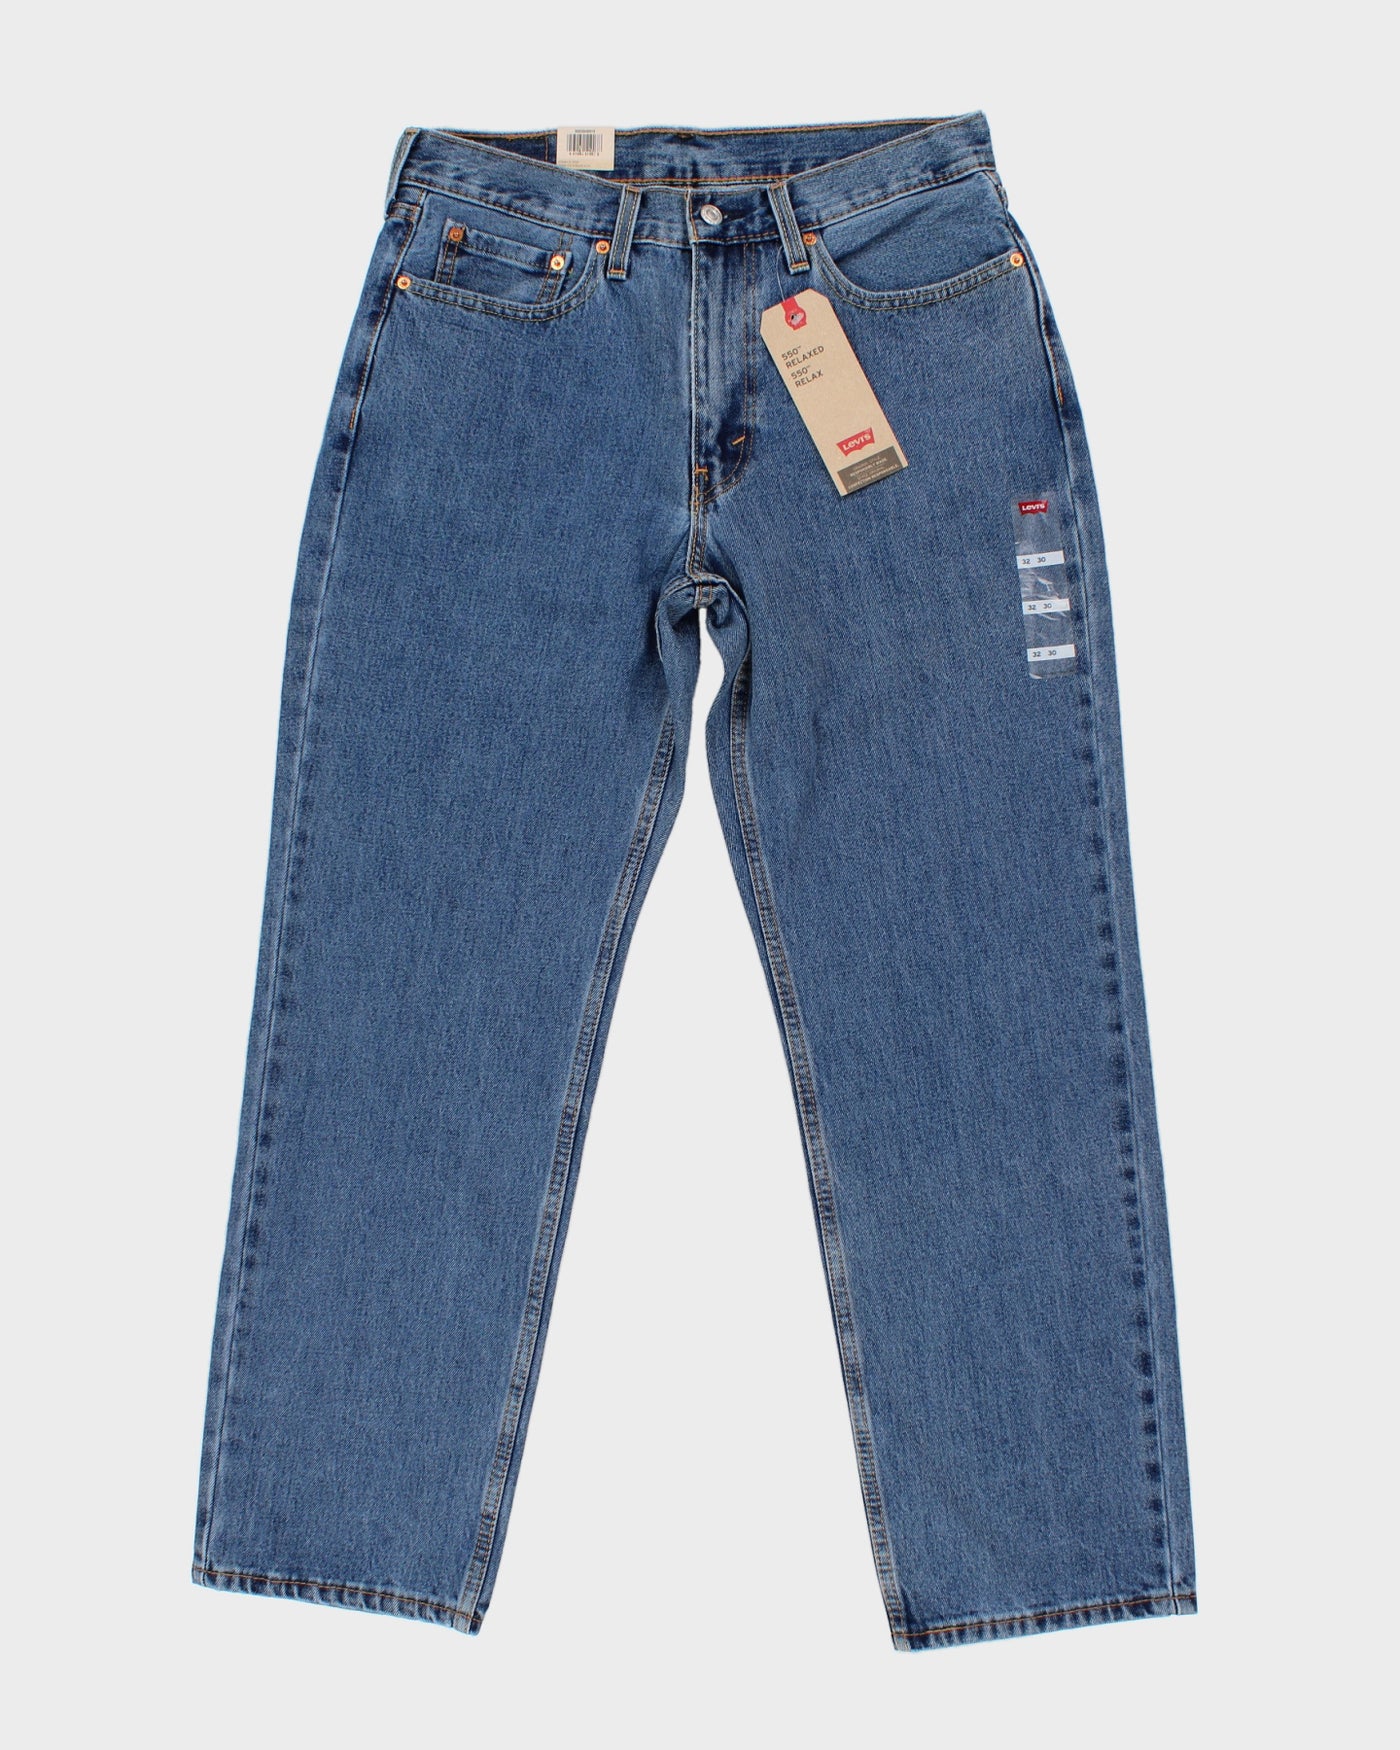 Levi's 550 Jeans Medium Wash - W32 L30